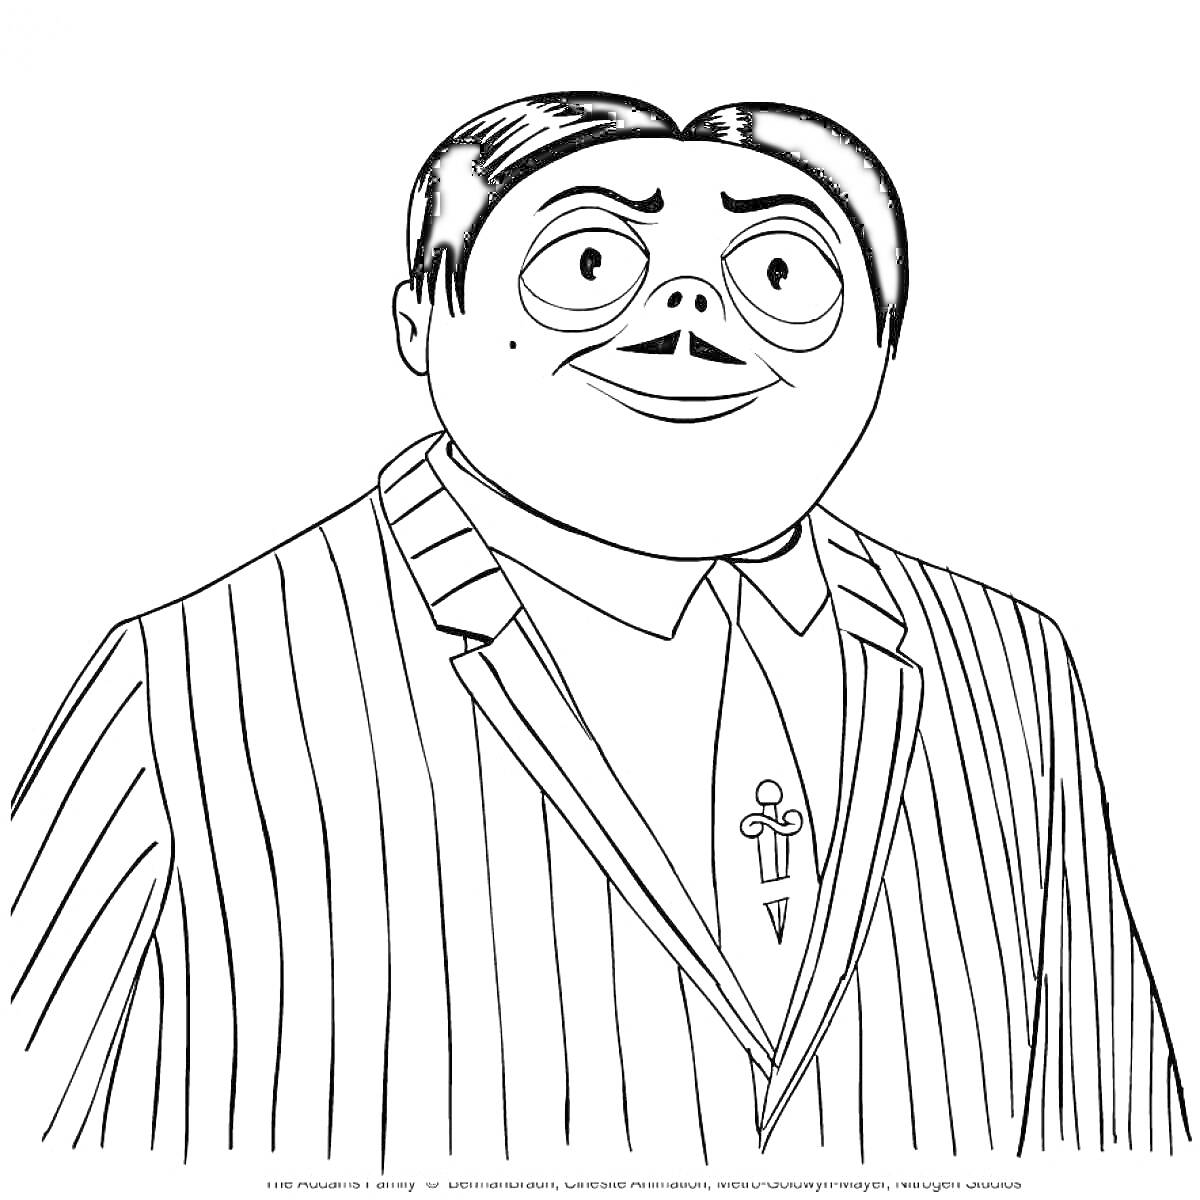 Раскраска мужской персонаж из семейки Аддамс в пиджаке в полоску крупным планом на раскраске